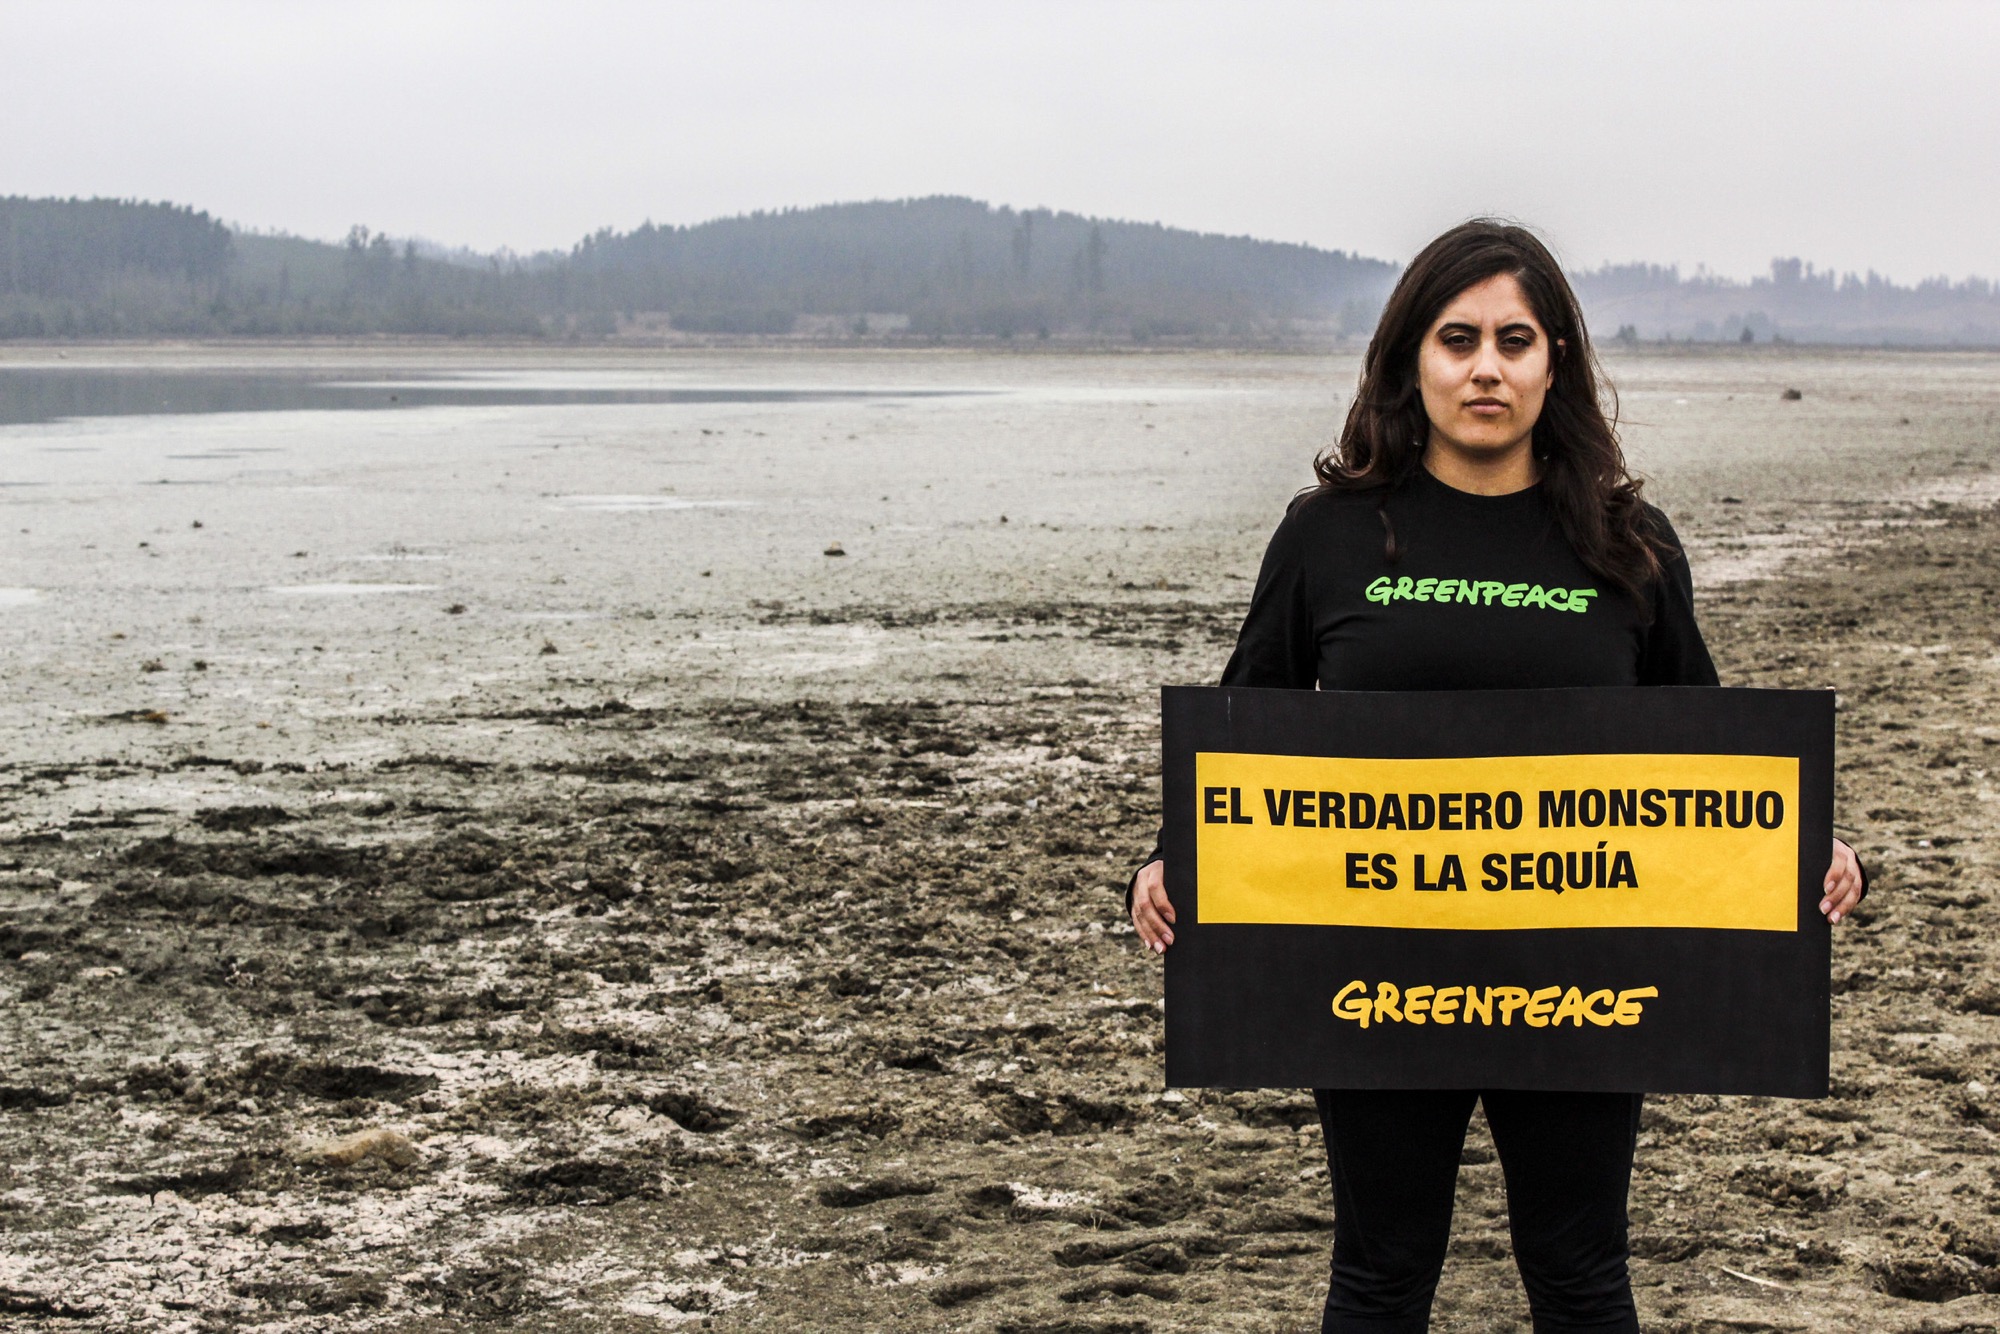 Greenpeace alerta sobre la sequía que afecta al lago Peñuelas y al embalse Los Aromos